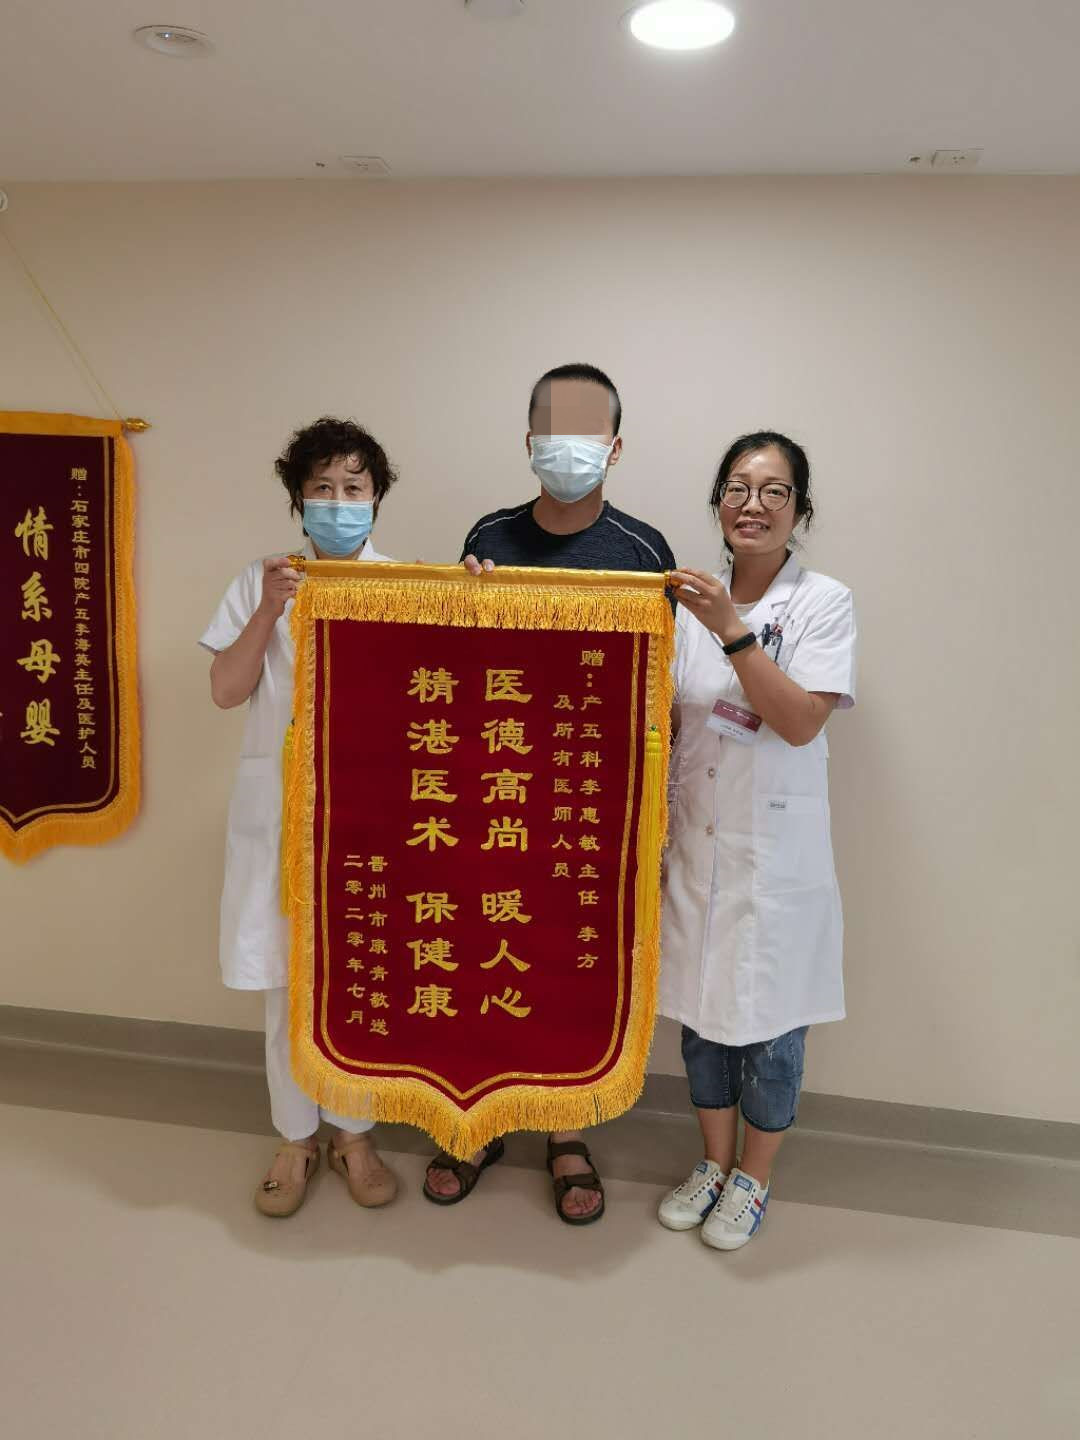 晋州产妇家属点赞产五科医师：“医德高尚暖人心，精湛医术保健康”